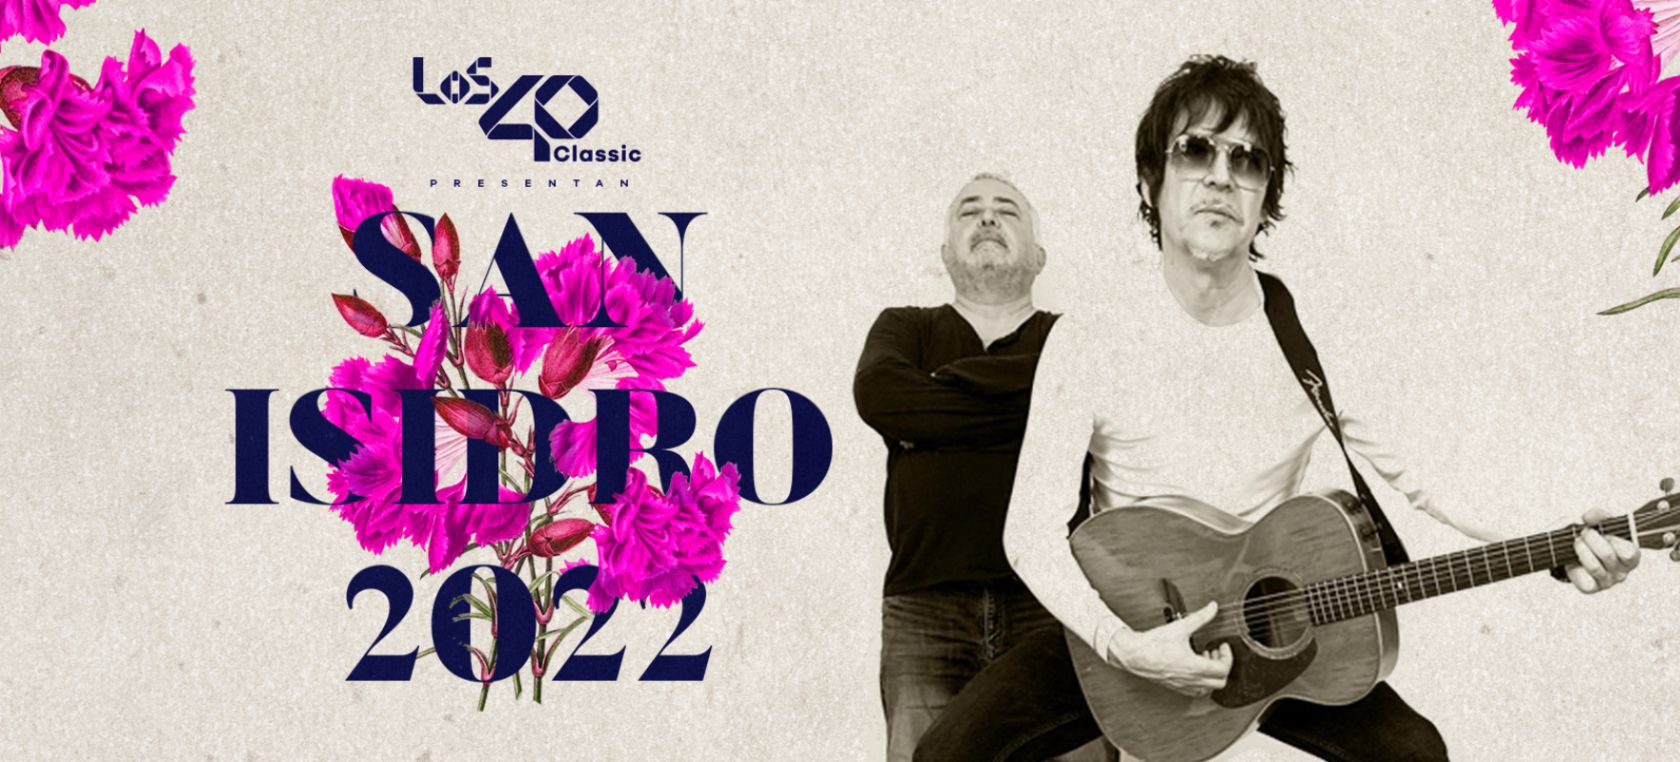 LOS40 Classic presenta: San Isidro 2022, el concierto gratuito en la Plaza Mayor de Madrid